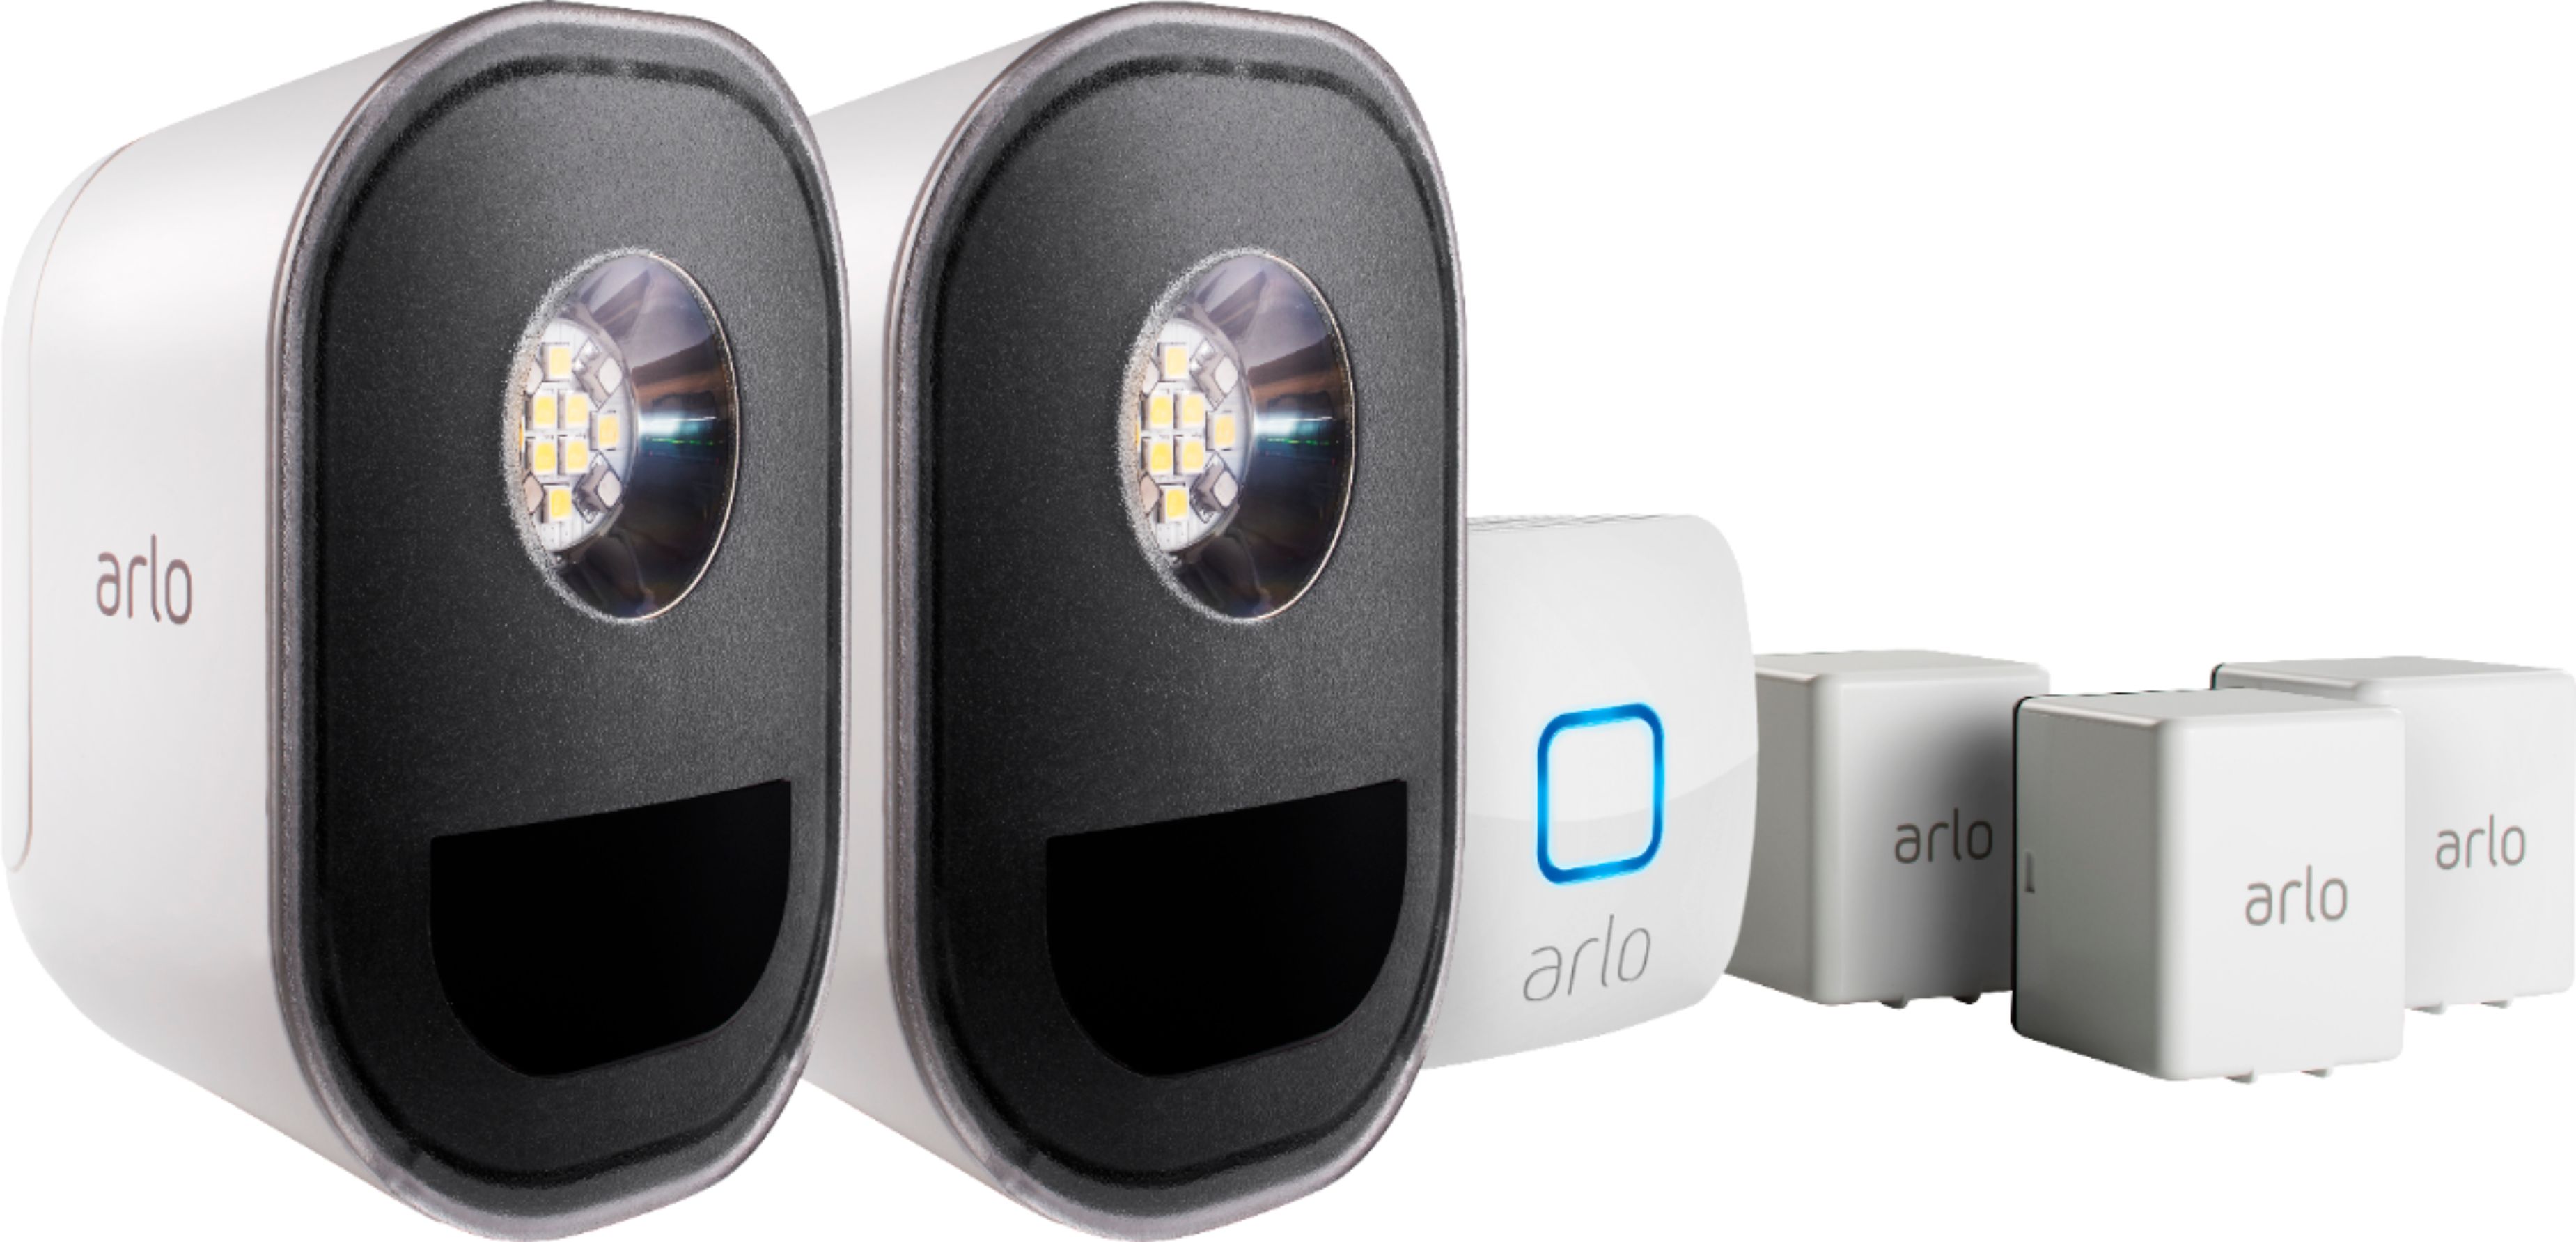 arlo security cameras at best buy